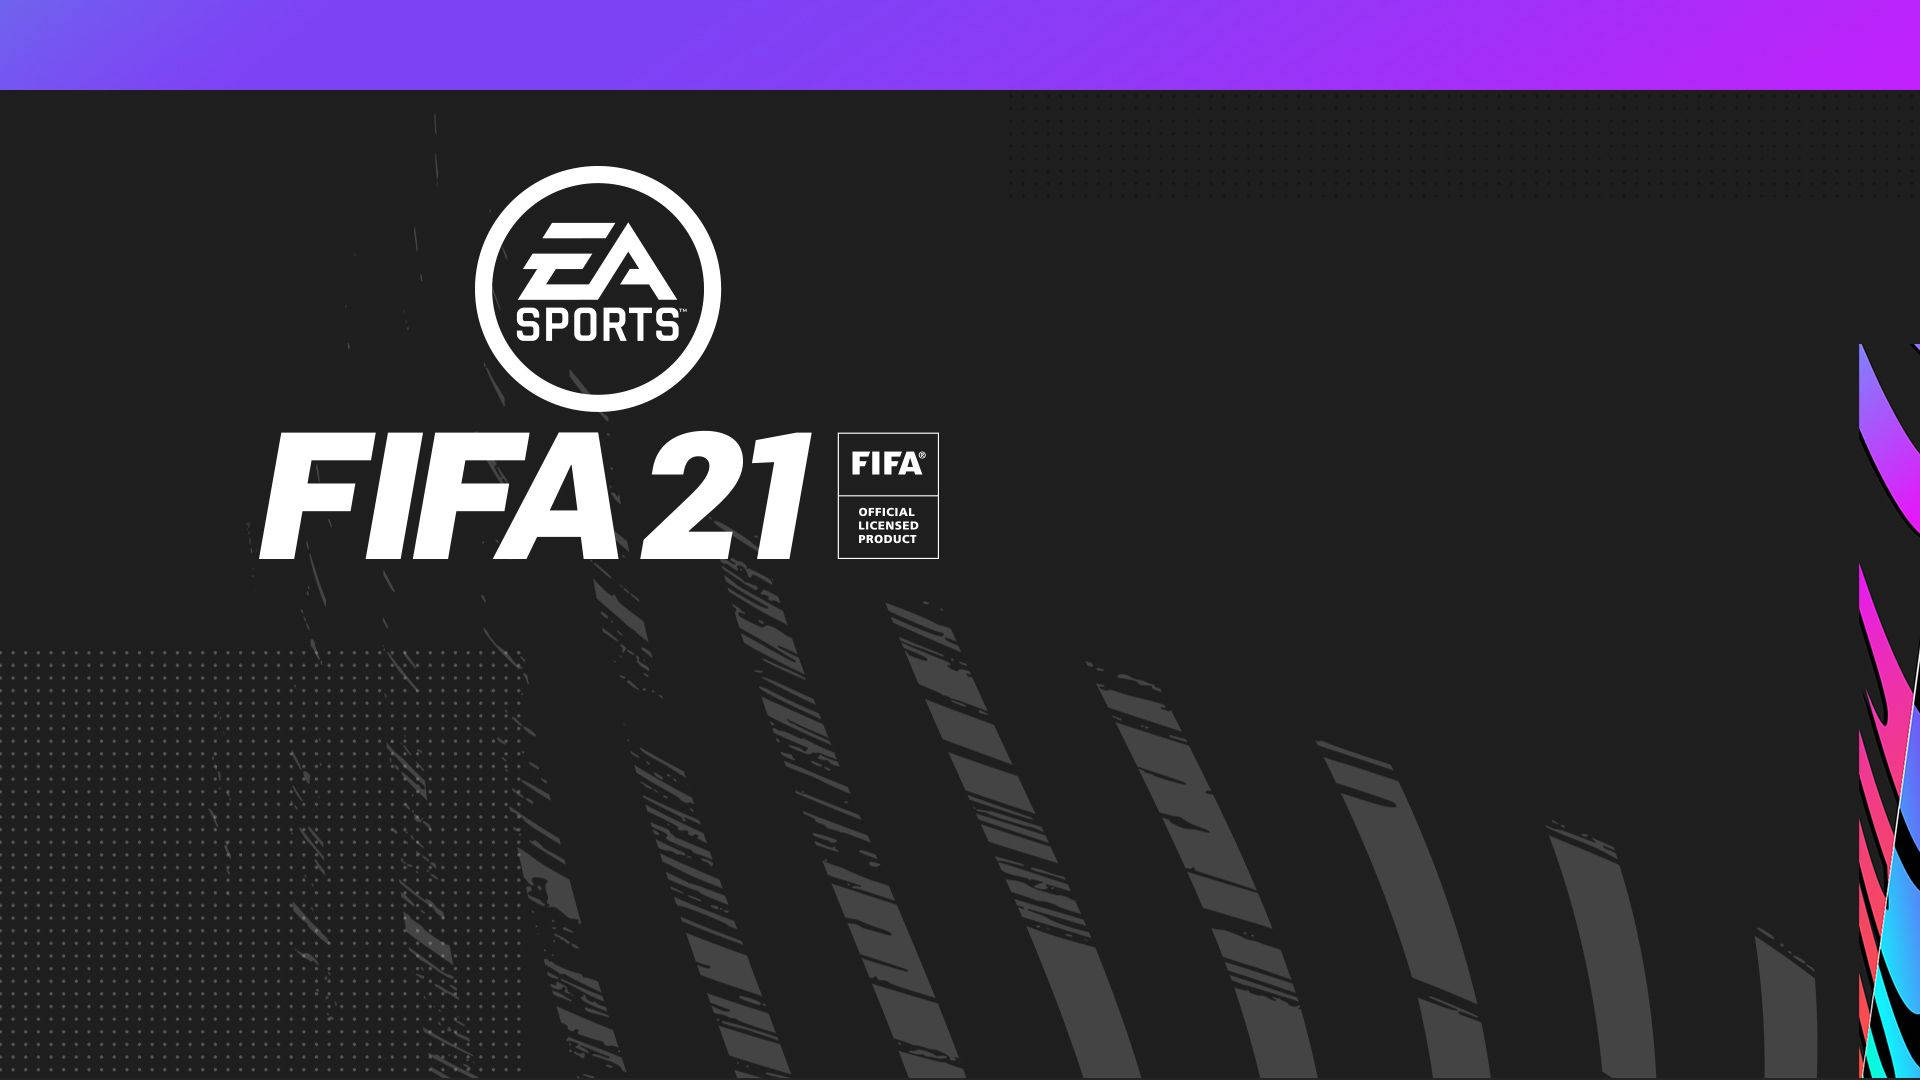 Logobásico De Fifa 21 En Fondo Oscuro Fondo de pantalla